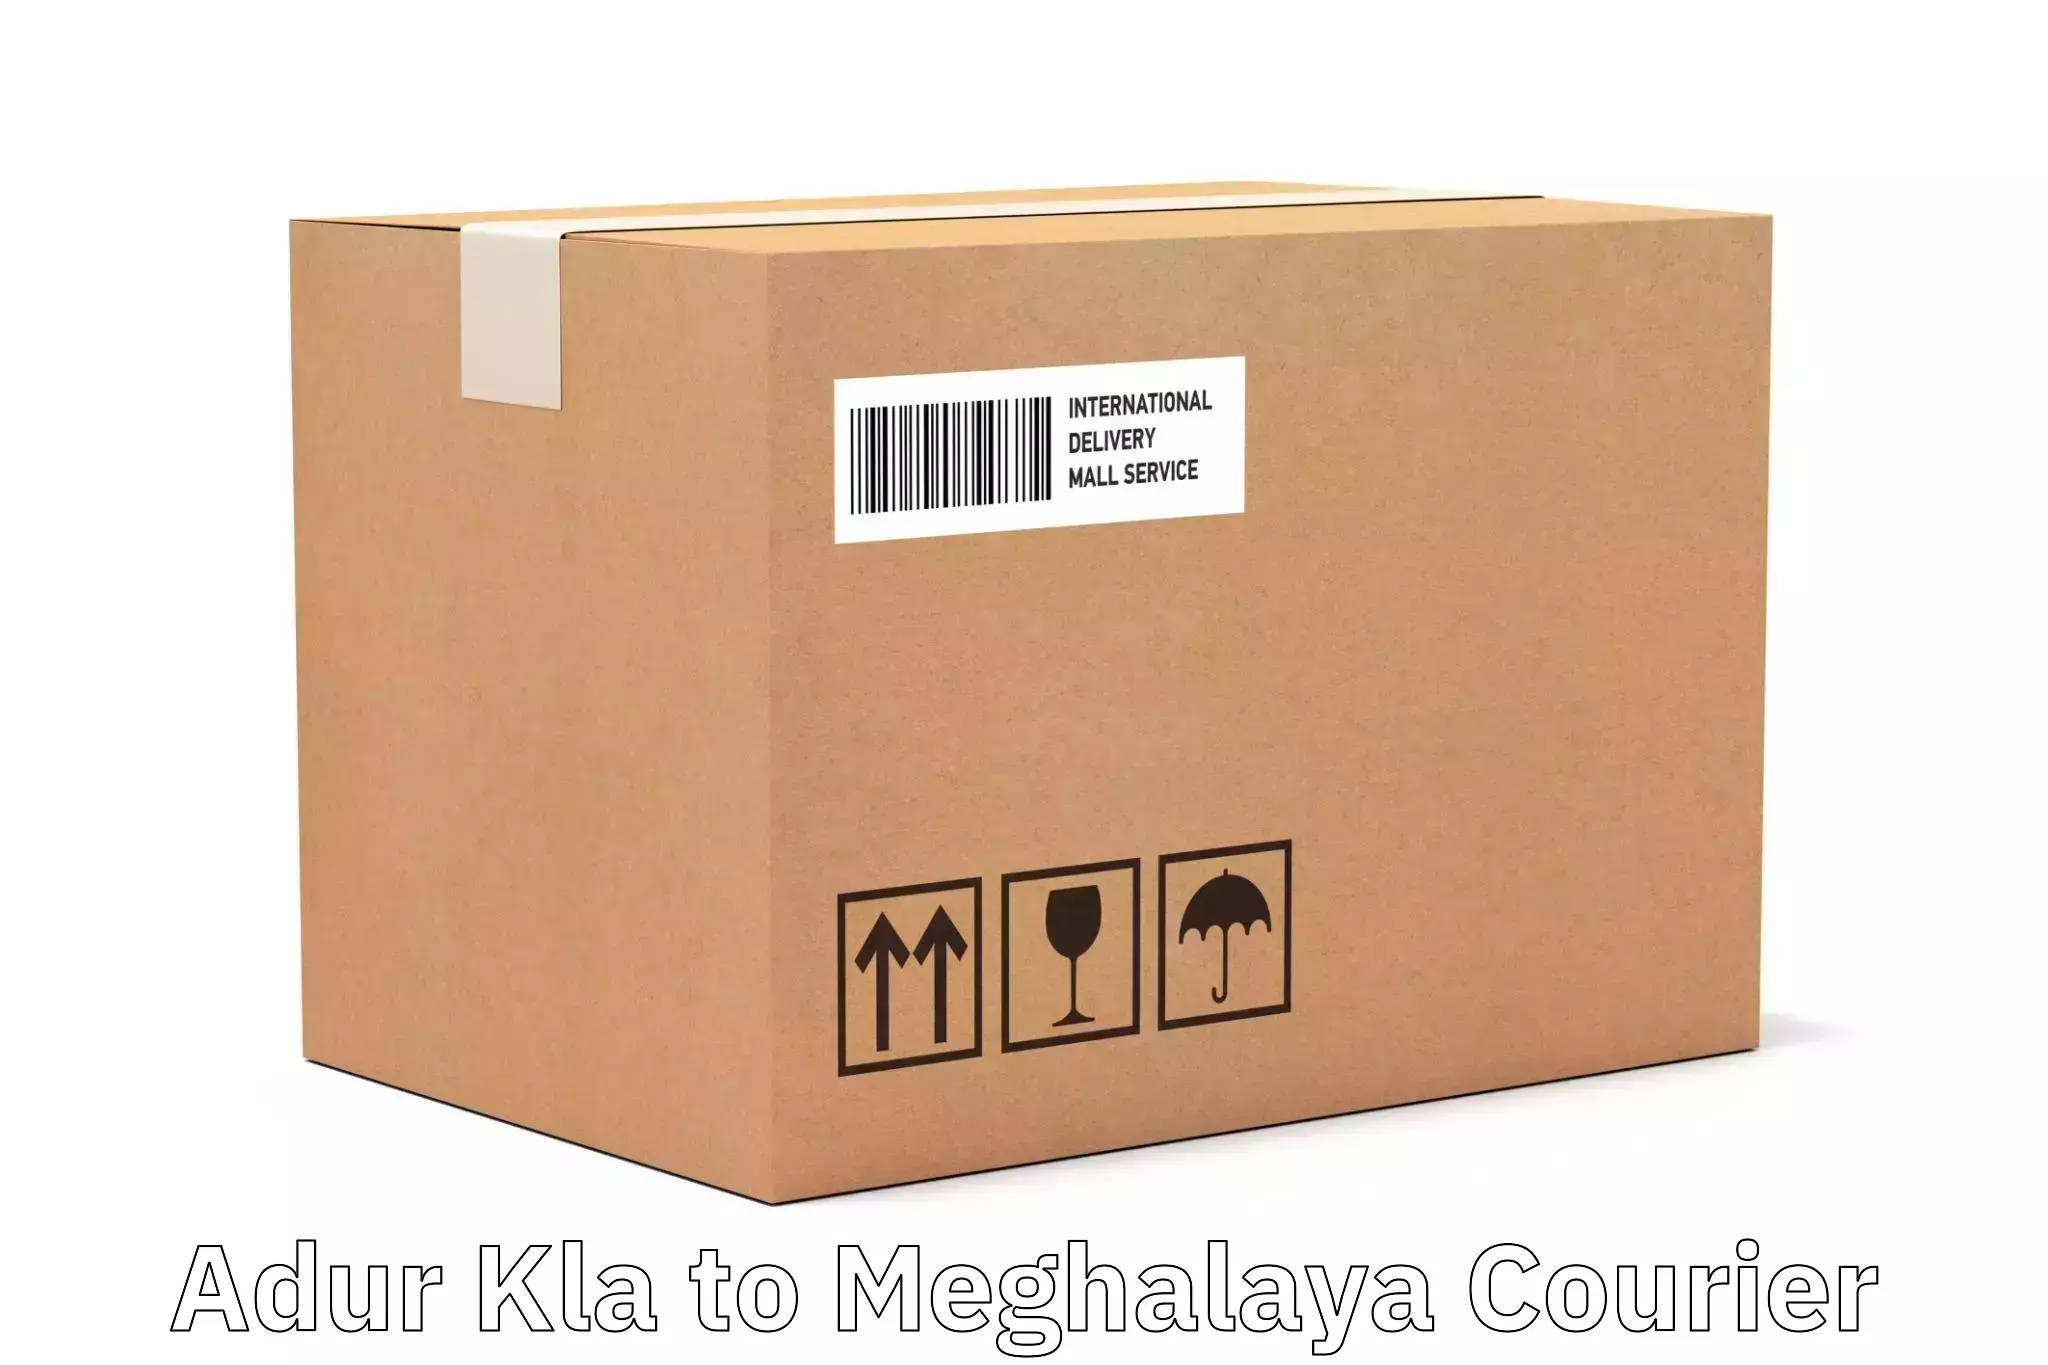 Regular parcel service Adur Kla to Dkhiah West